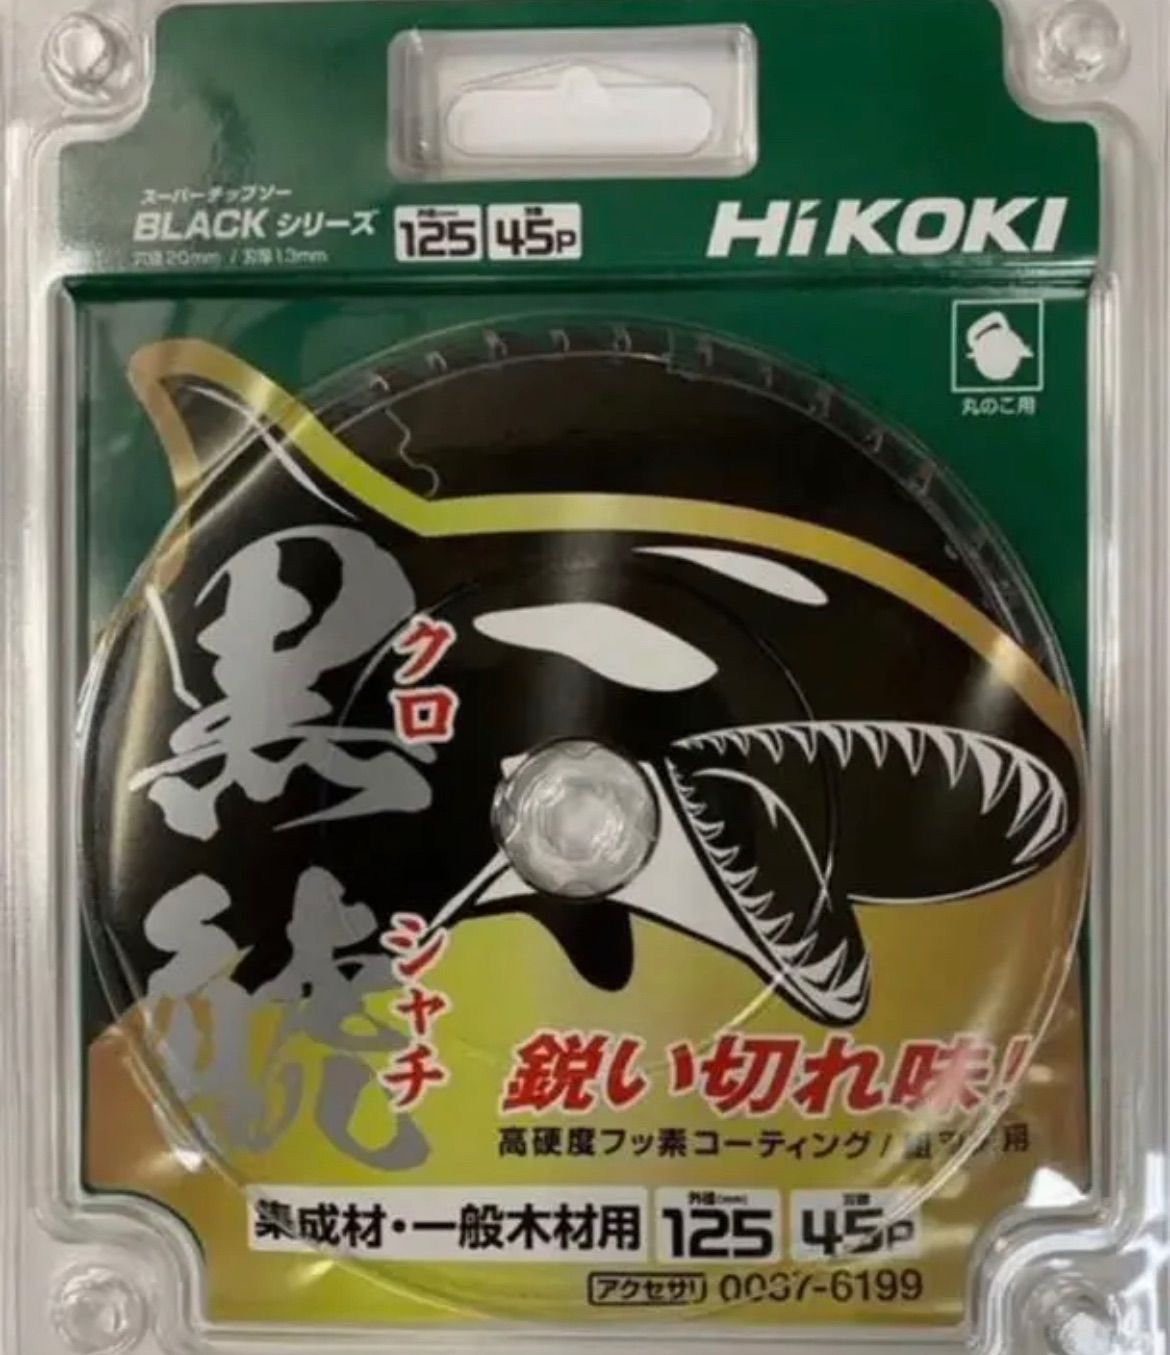 HiKOKI(ハイコーキ) スーパーチップソー黒鯱 125×45P 0037-6199-